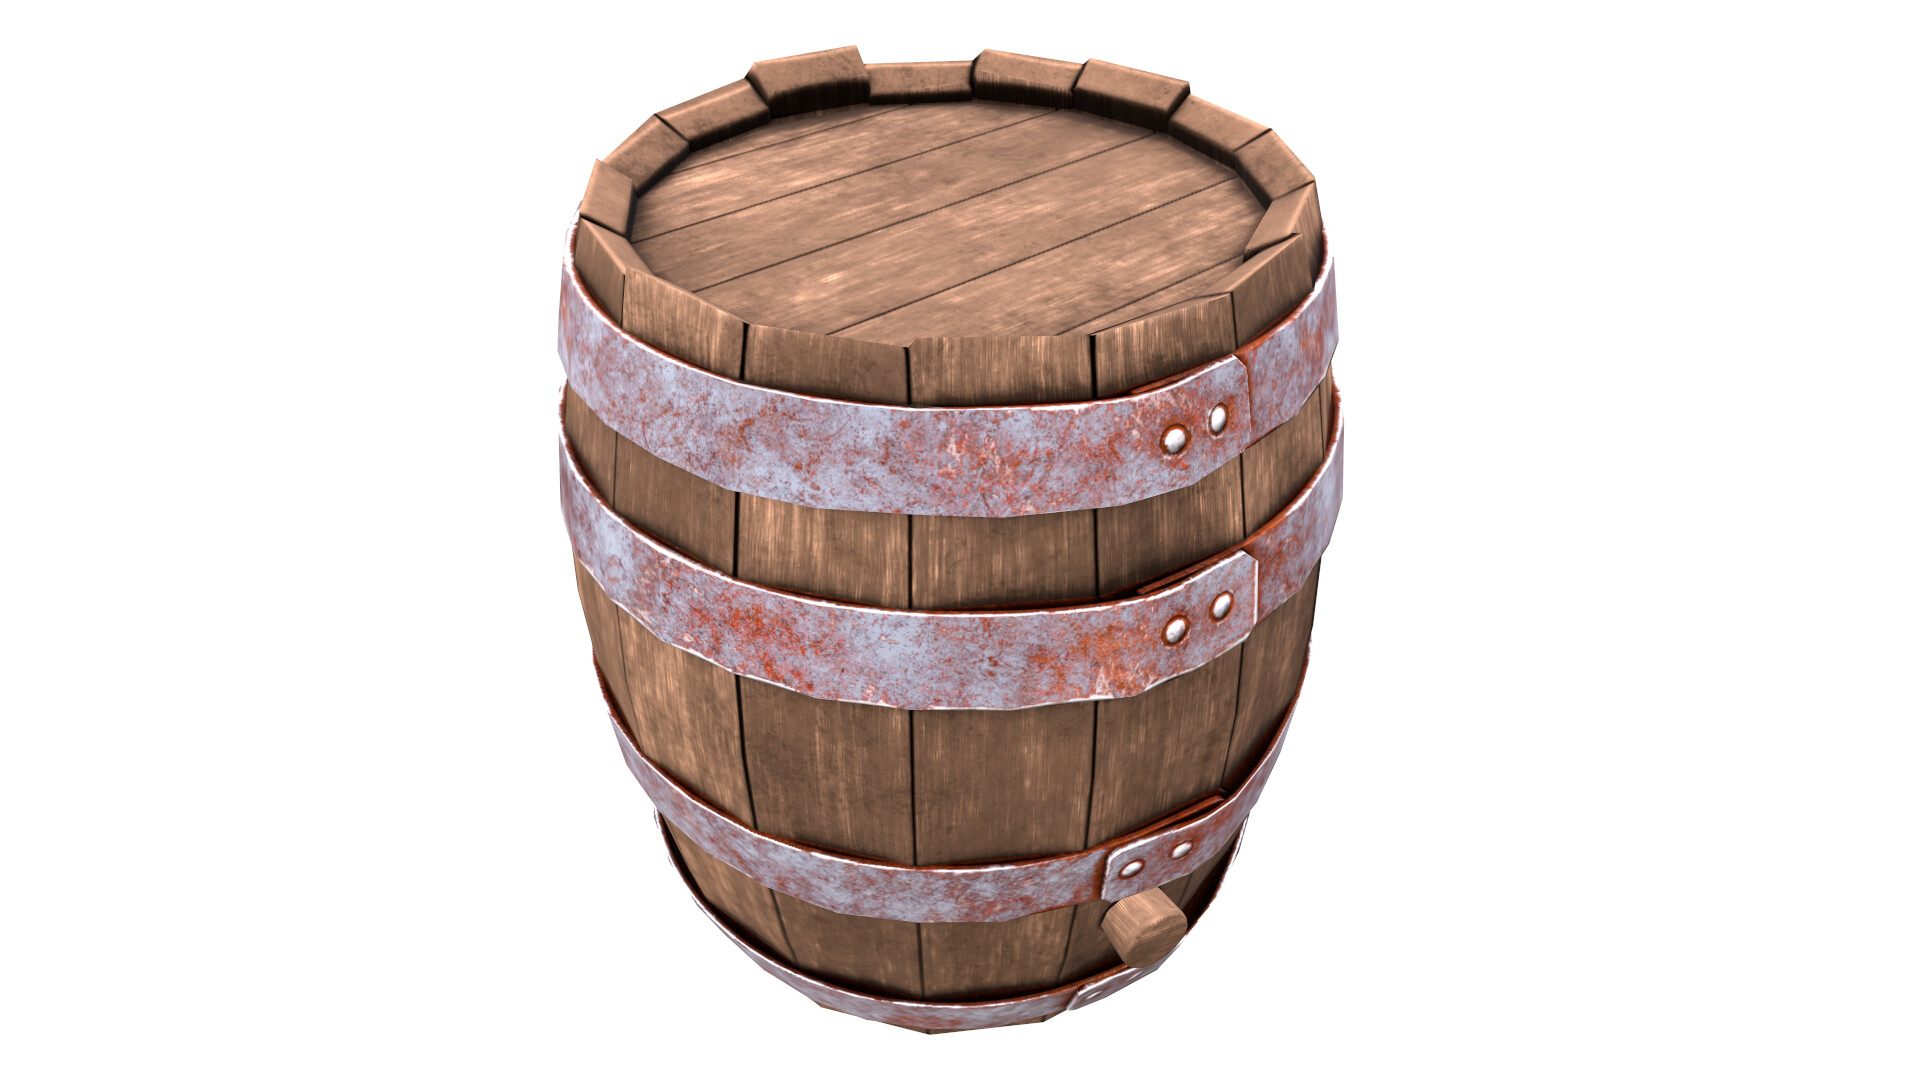 Instant barrel rust фото 63